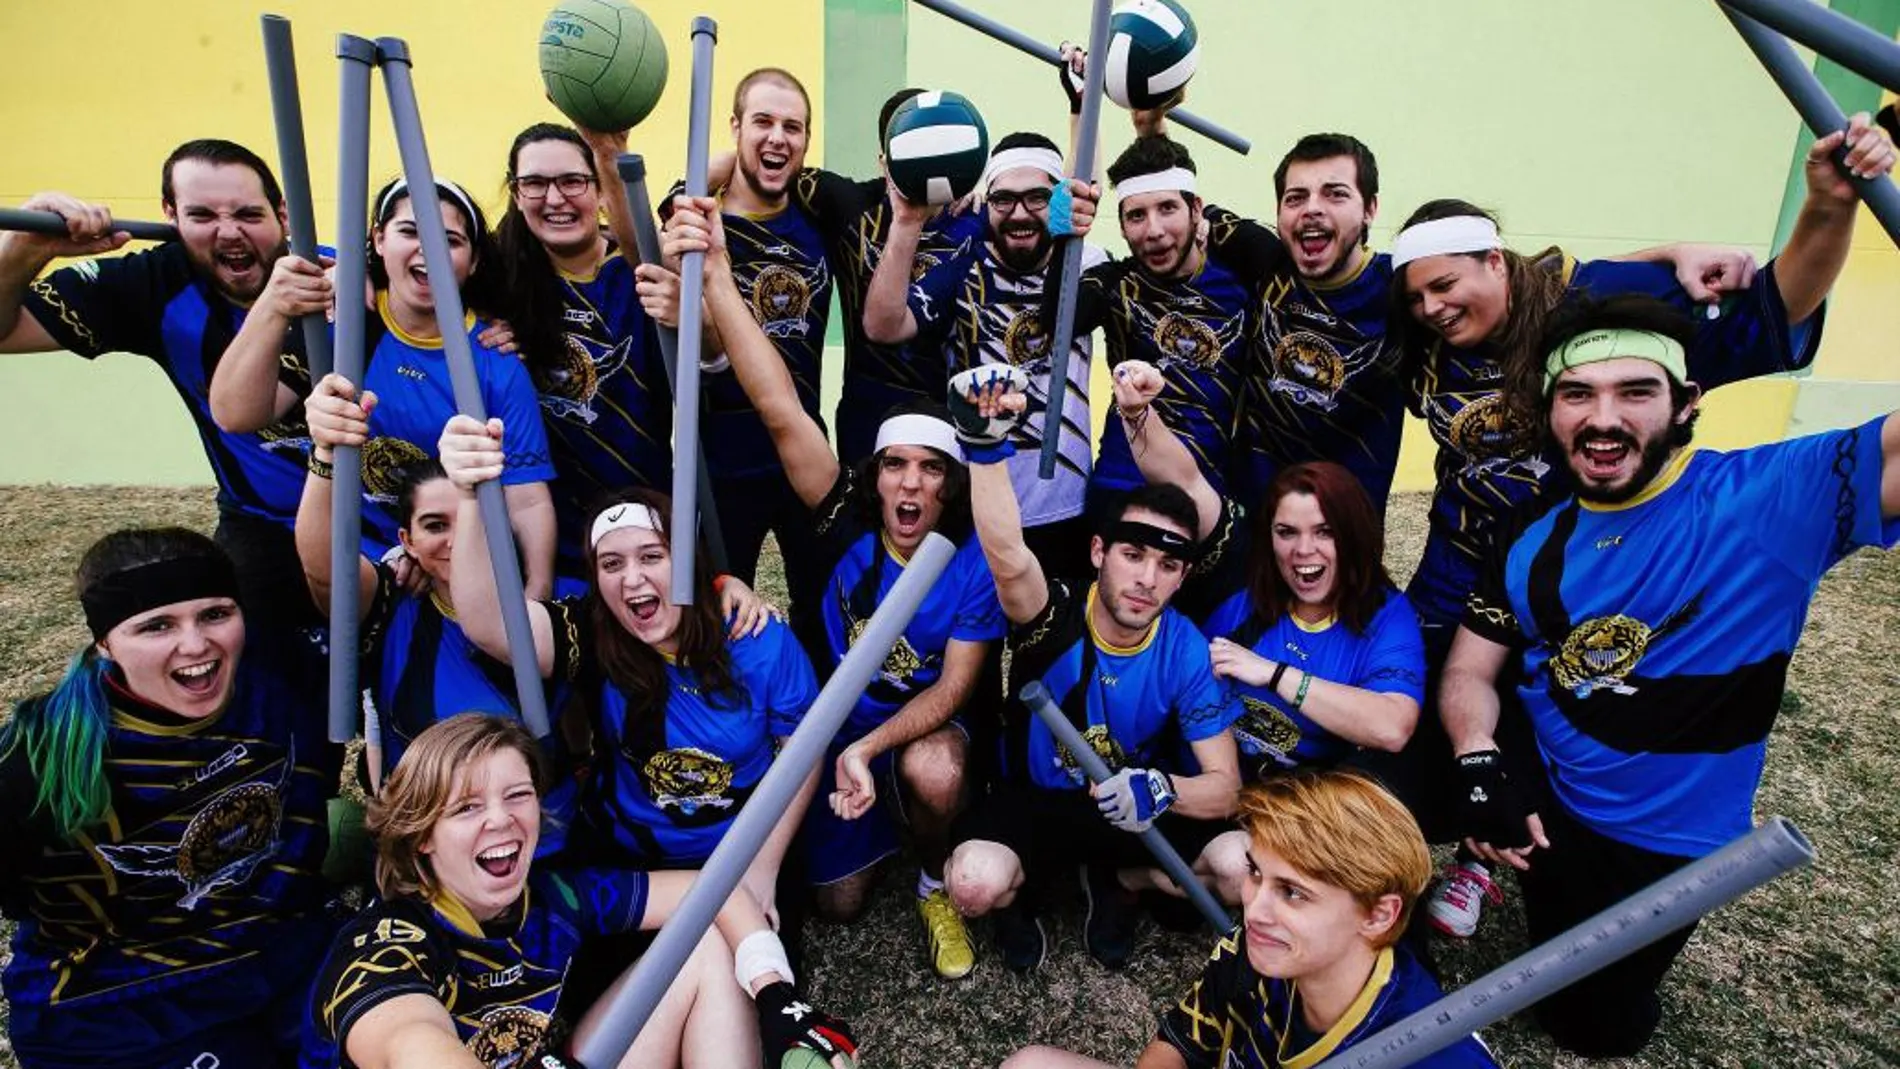 Los integrantes del equipo de «quidditch», deporte inspirado en Harry Potter, «Malaka Vikings».